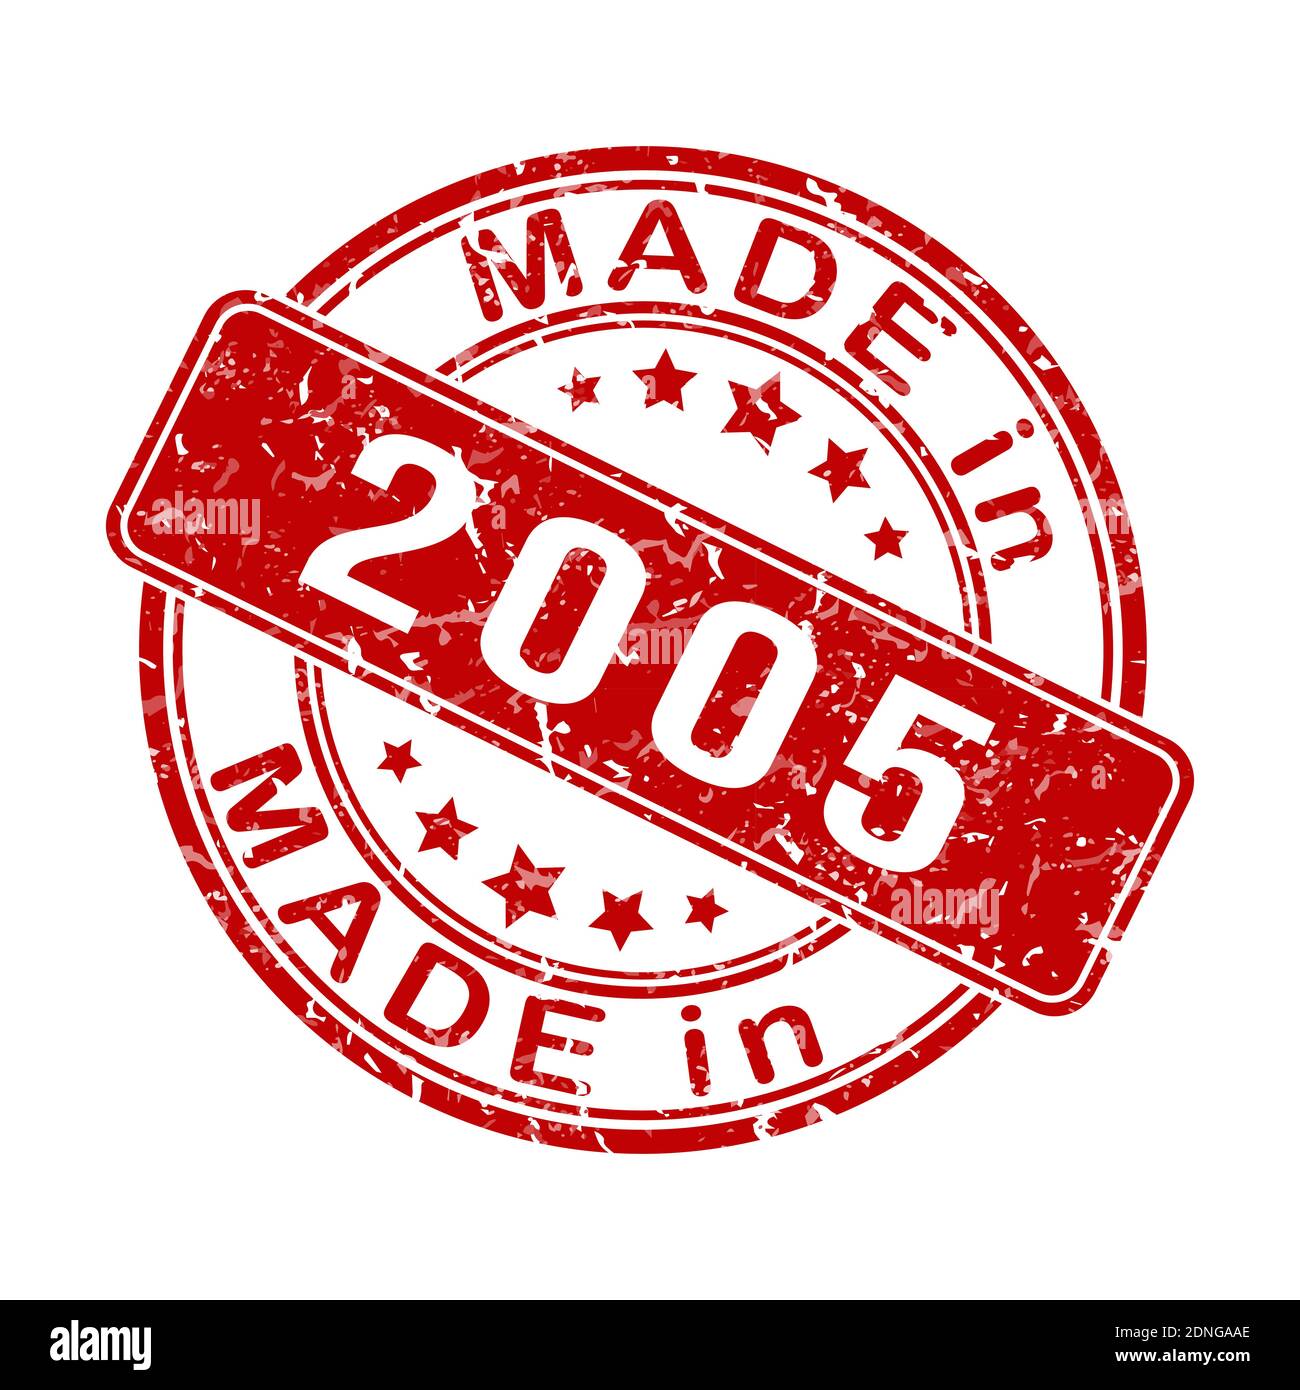 Impronta di un sigillo o di un timbro con l'iscrizione FATTA NEL 2005. Illustrazione vettoriale modificabile. Etichetta, adesivo o marchio. Stile piatto. Illustrazione Vettoriale